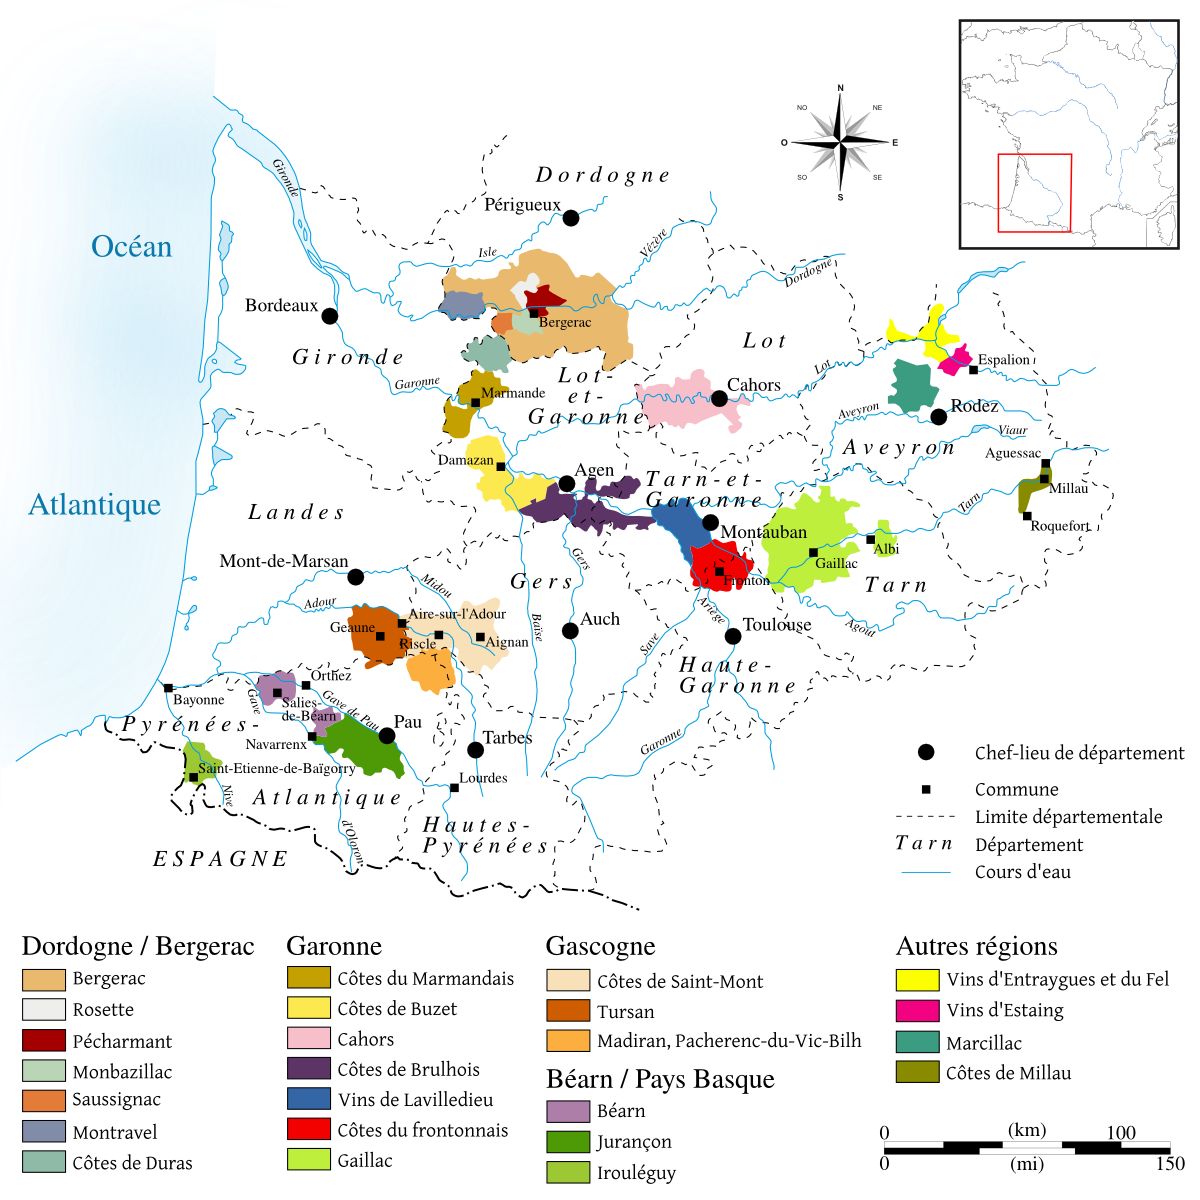 Karte von Südwest-Frankreich mit allen Weinbaubereichen bzw. Appellationen